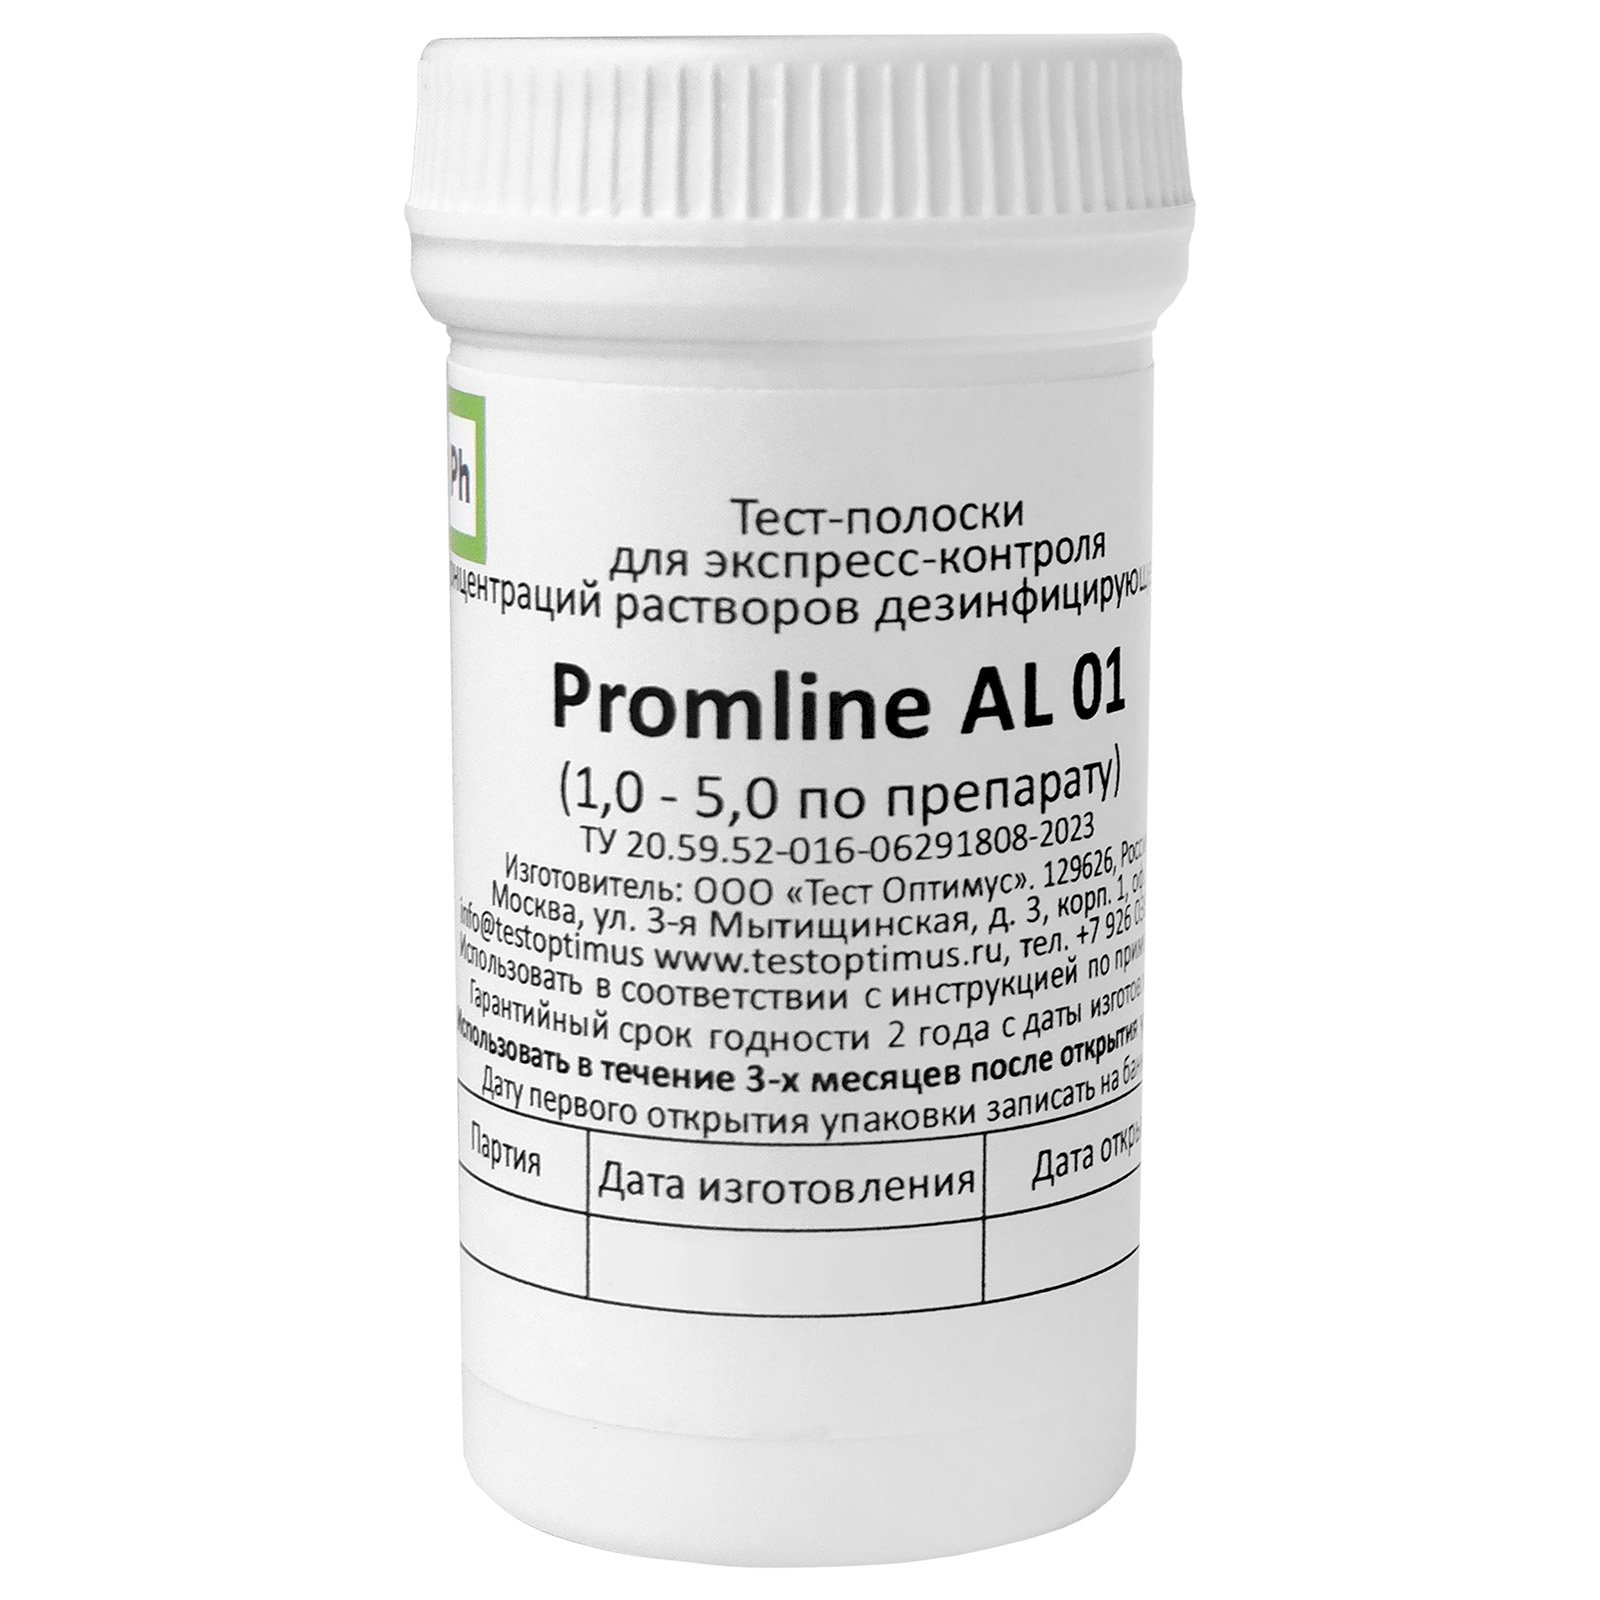 Ph Индикаторные тест-полоски предназначены для экспресс-контроля концентрации растворов дезинфицирующего средства Promline AL 01. Поставляются в пластиковой банке.